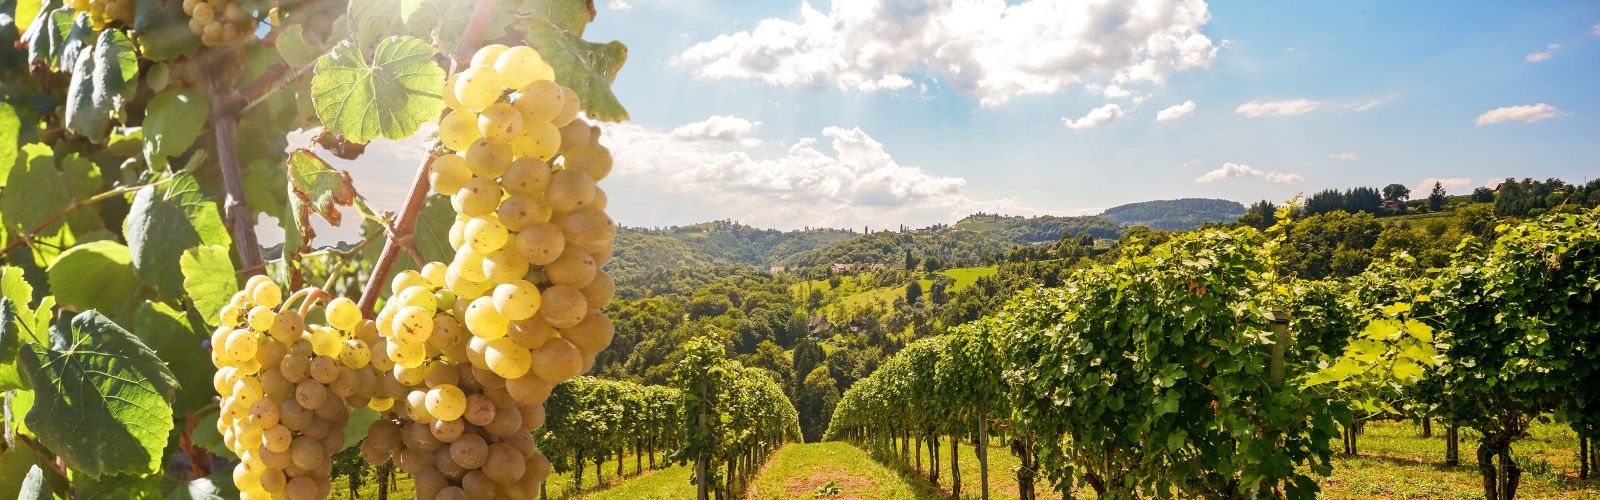 Agricompet: gli scenari futuri del settore vitivinicolo italiano